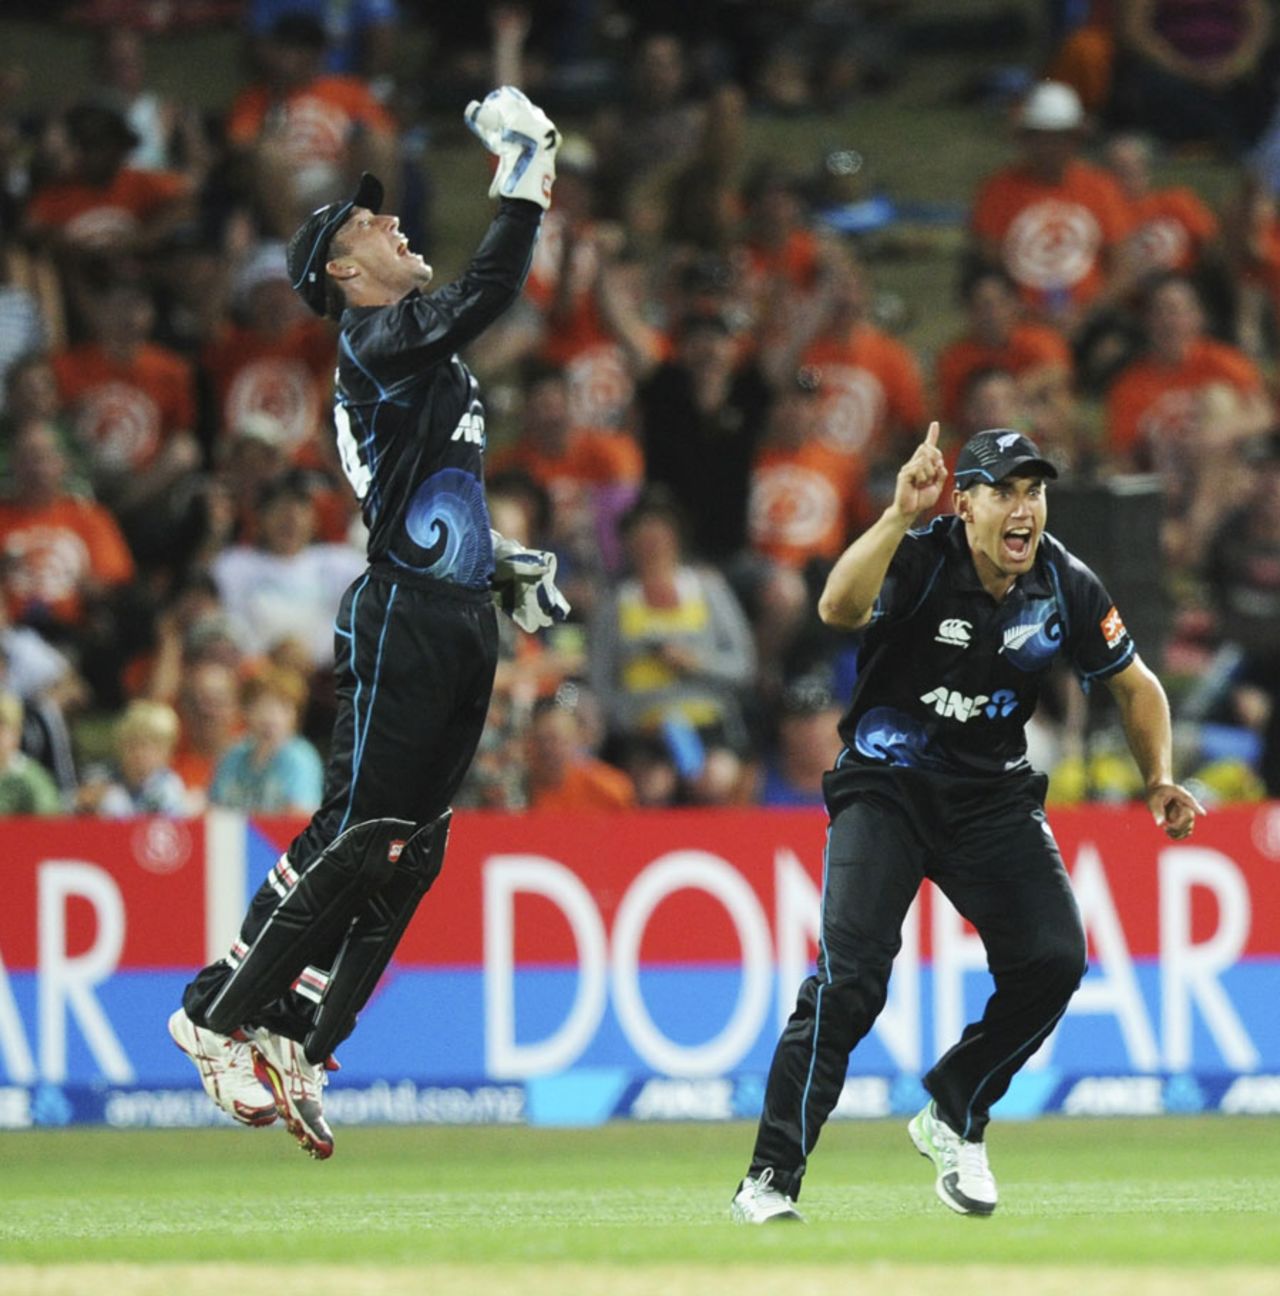 Luke Ronchi and Ross Taylor celebrate a wicket, New Zealand v India, 1st ODI, Napier, January 19, 2014